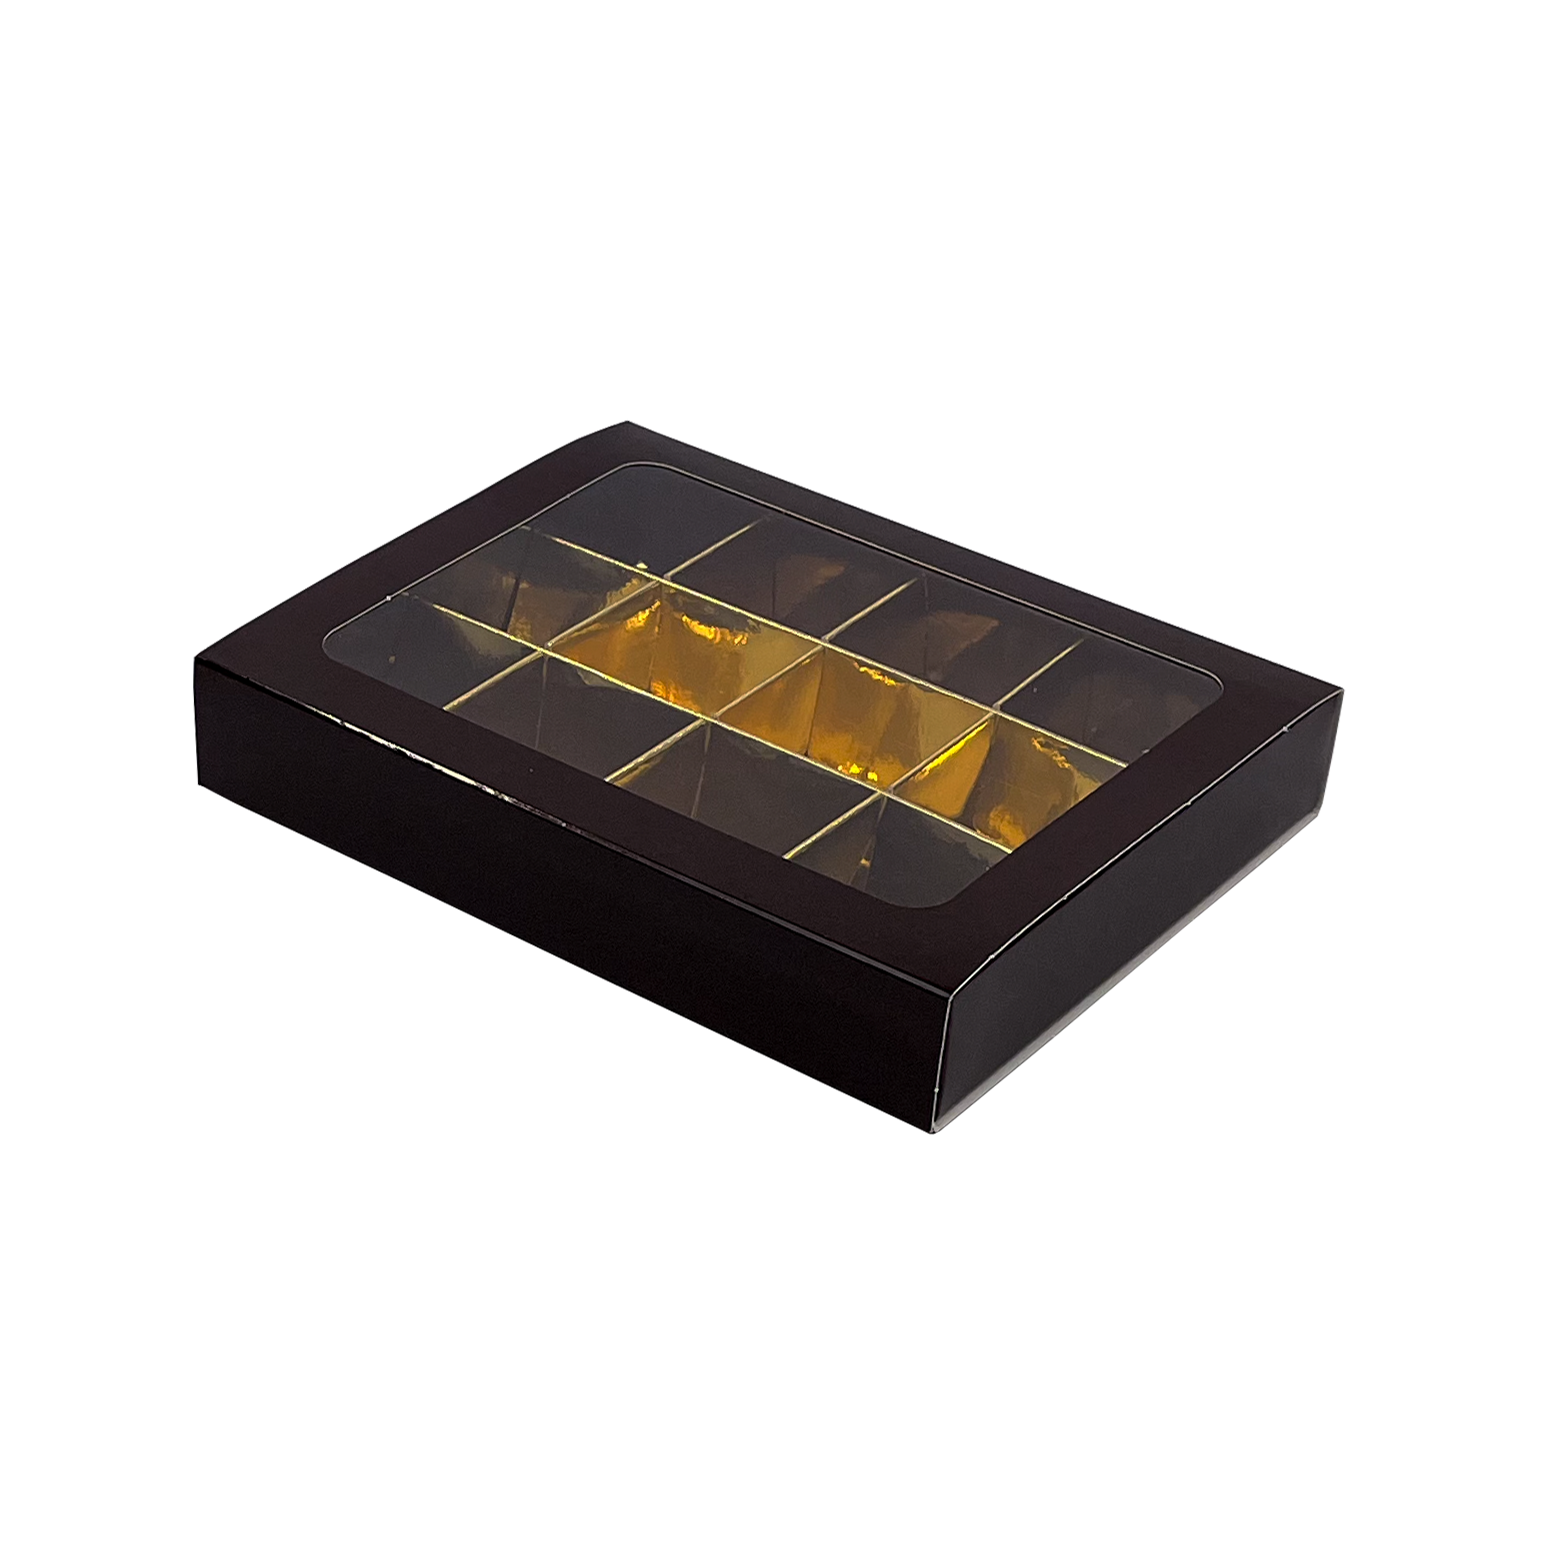 Boîte brun avec interiéur pour 15 pralines - 150*110*27mm - 70 pièces